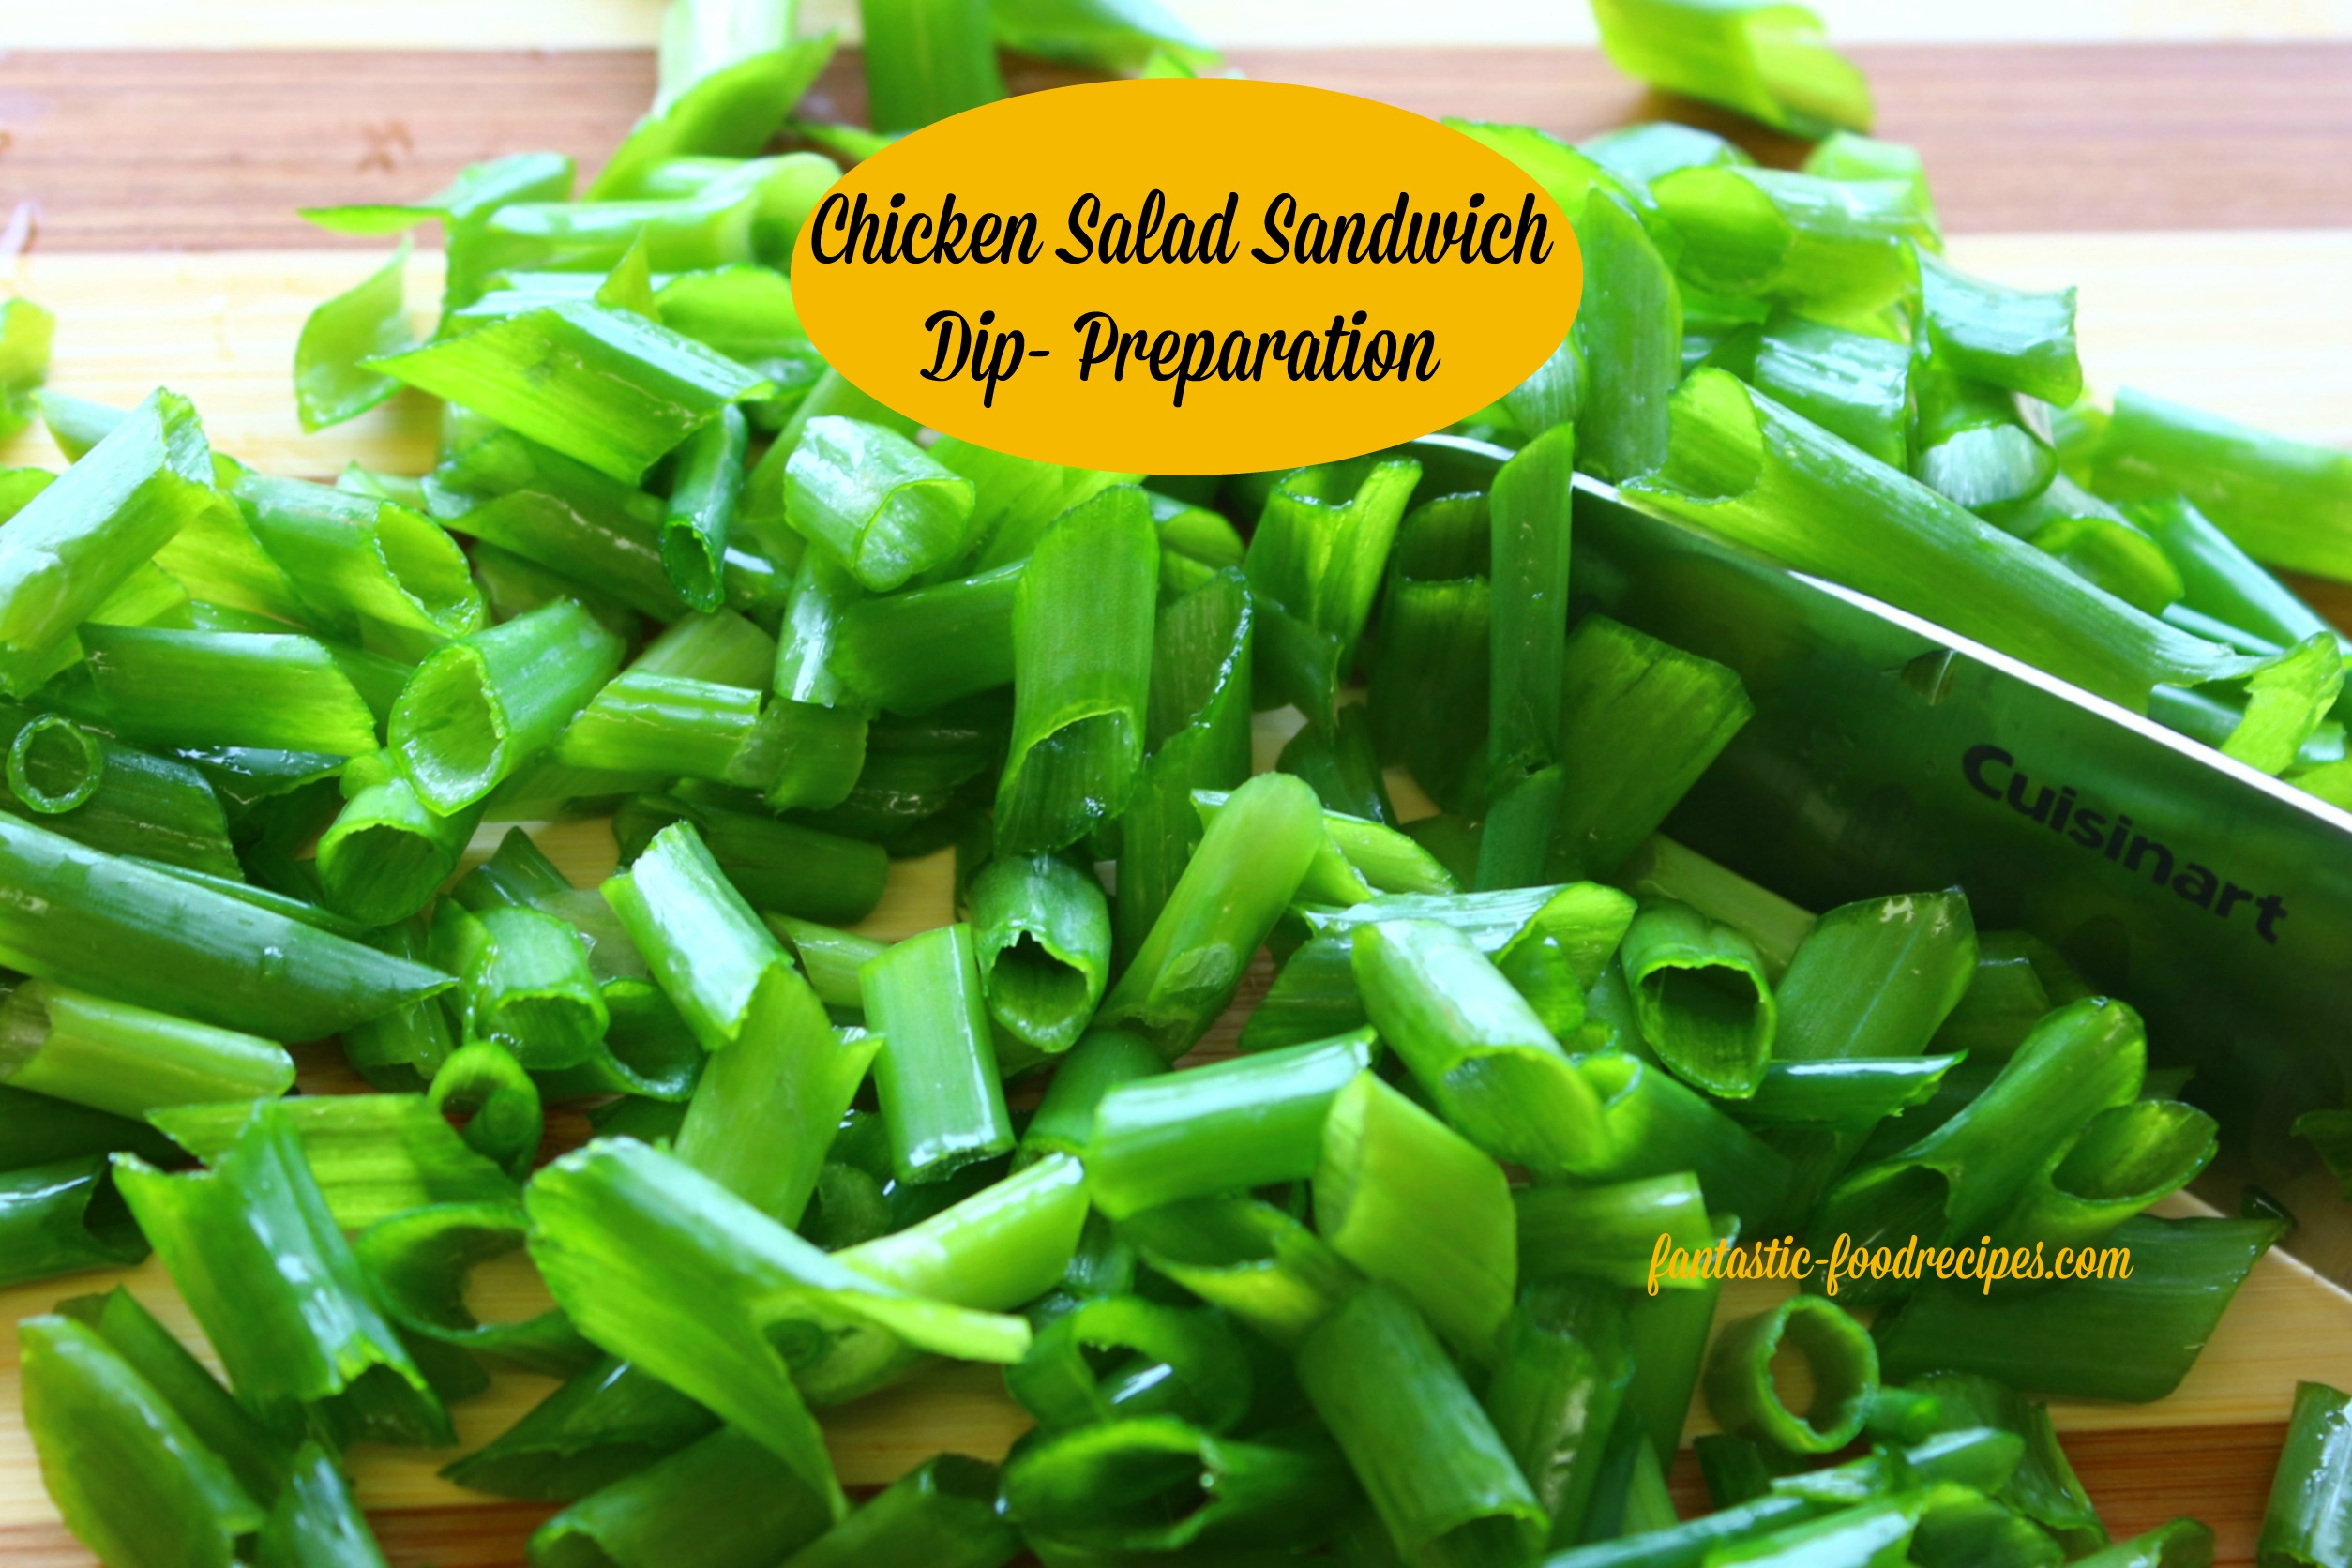 Chicken Salad Sandwich Dip-Preparation